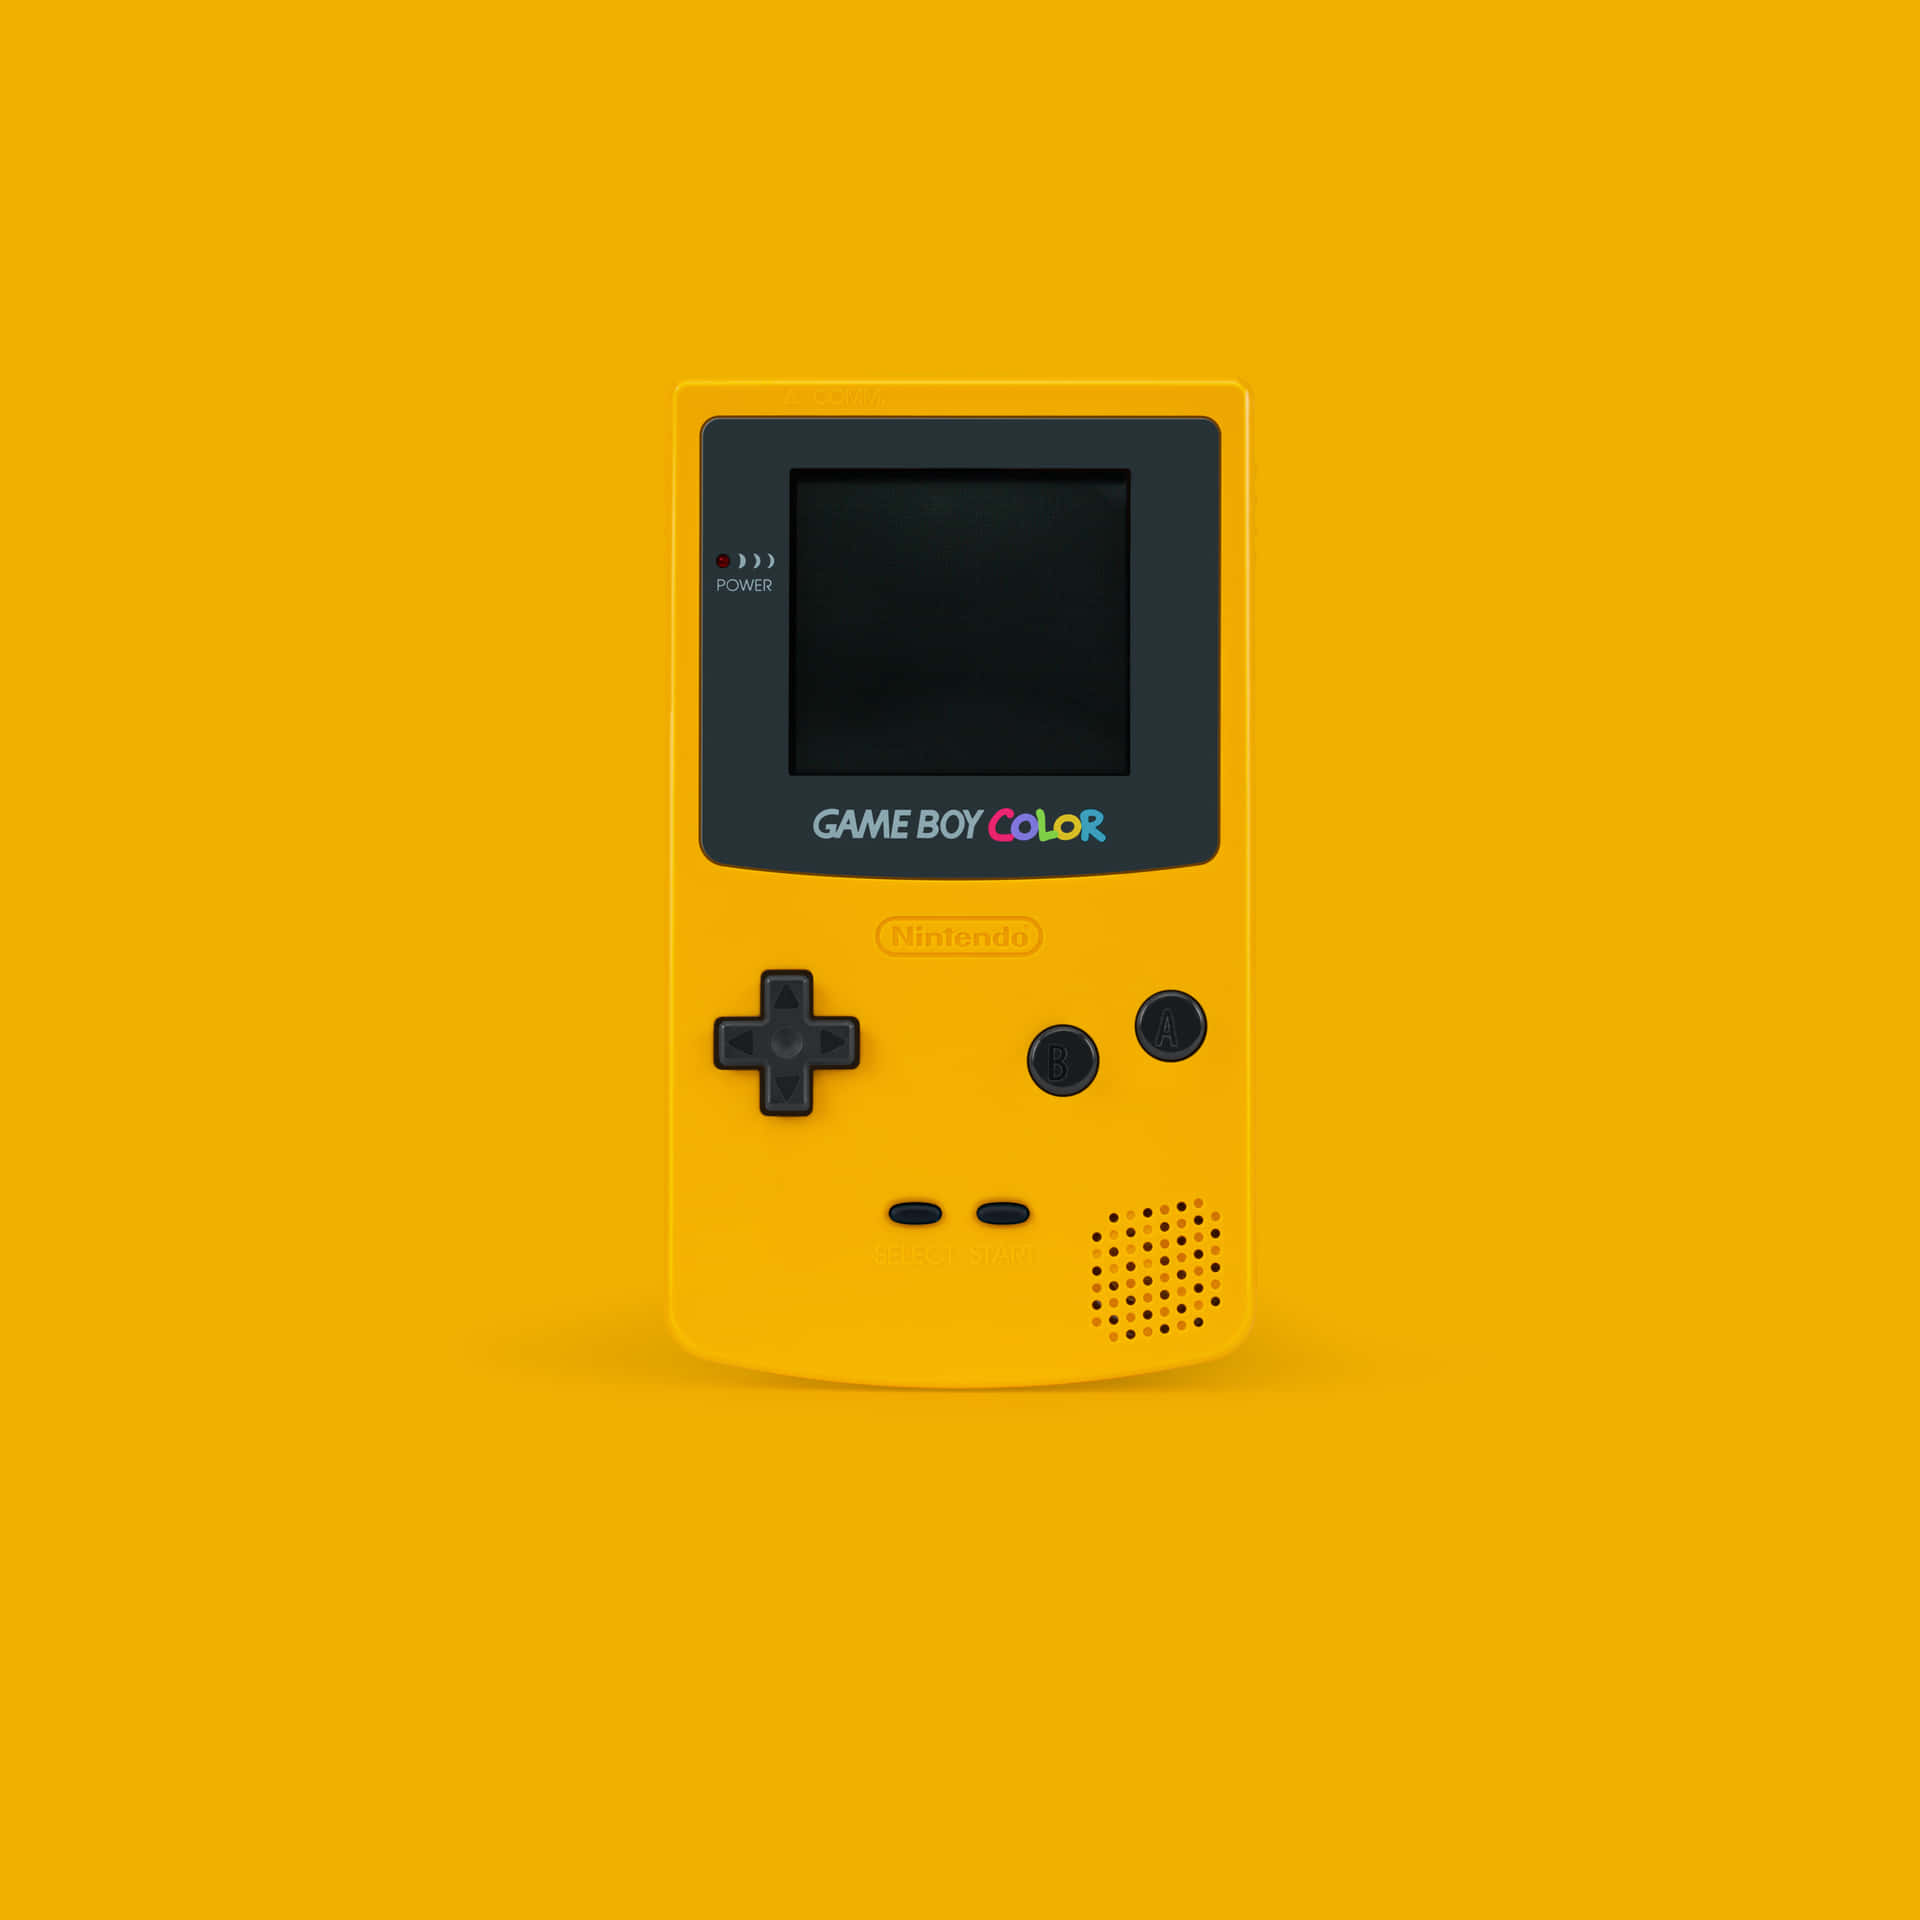 Fondoamarillo Para El Nintendo Game Boy Color